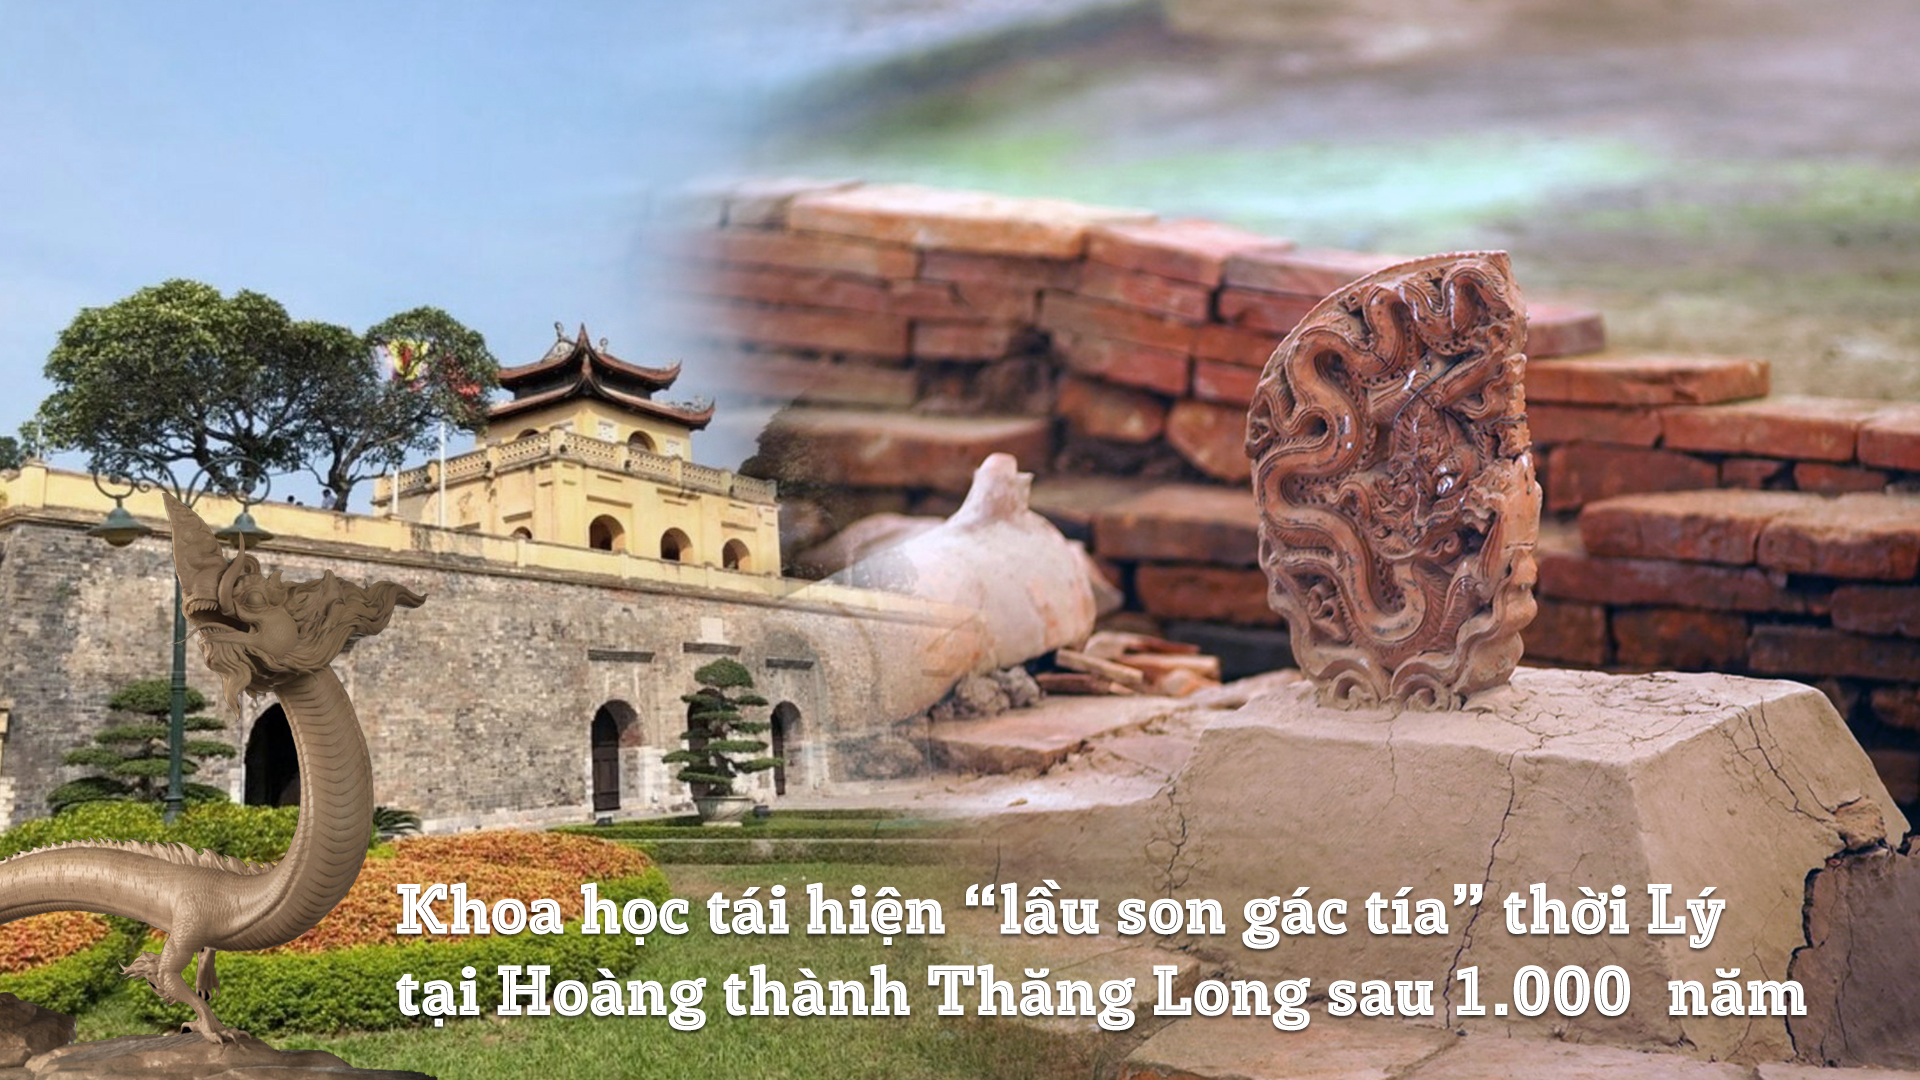 Hoàng thành Thăng Long 3D: Với hình ảnh Hoàng thành Thăng Long 3D, bạn sẽ được trải nghiệm một chuyến phiêu lưu đầy lịch sử và văn hoá. Hãy đắm mình trong một không gian 3D tuyệt vời để khám phá vẻ đẹp của đất nước Việt Nam.